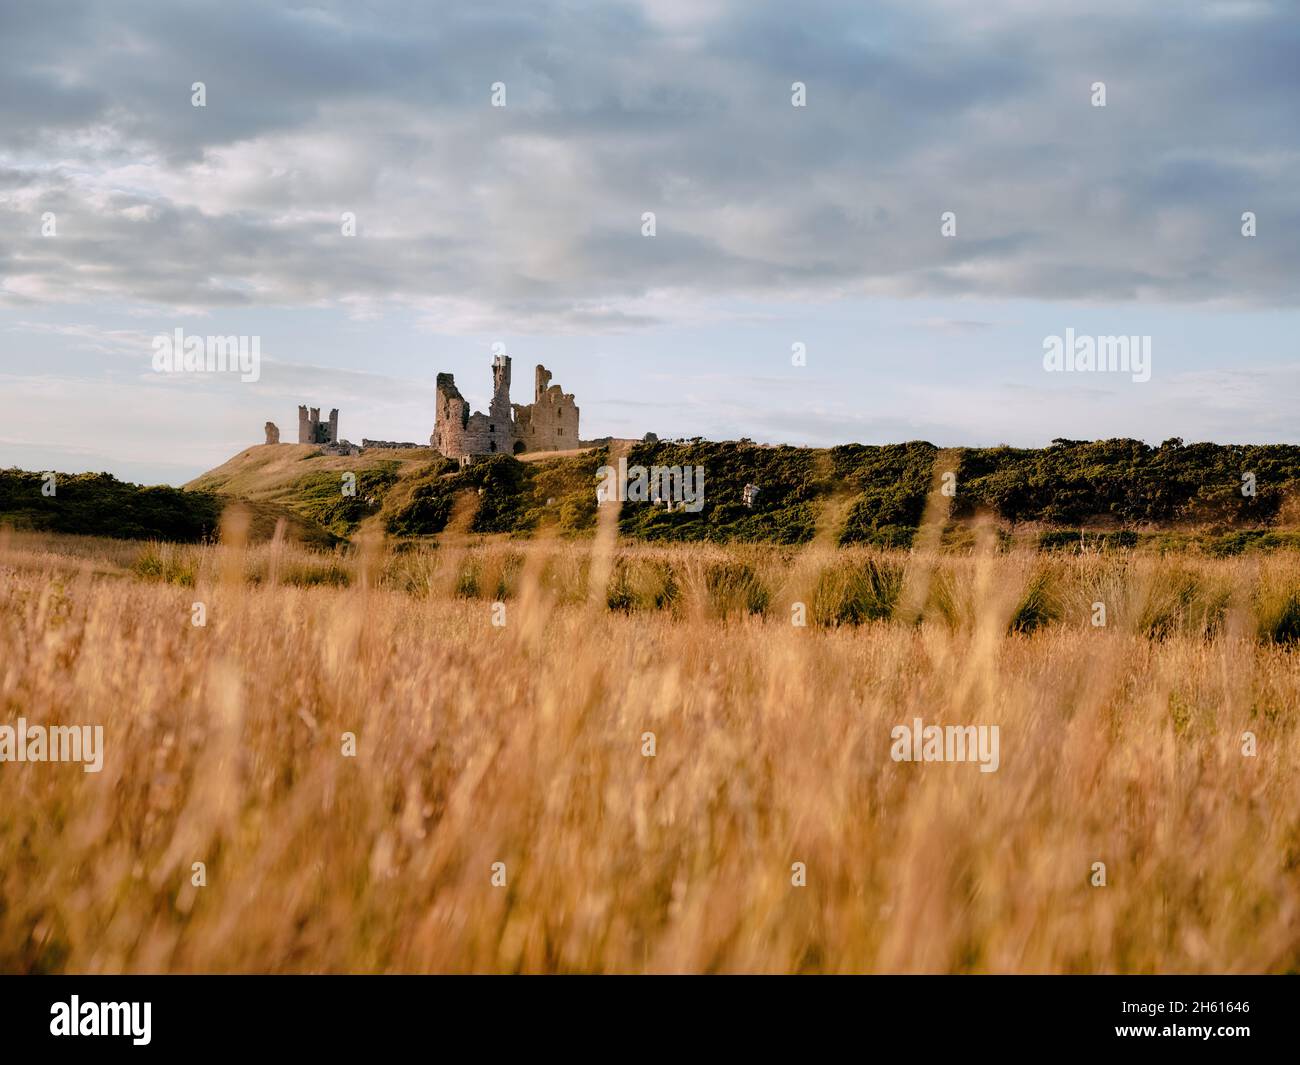 Die Sommerlandschaft der Dunstanburgh Castle Ruins - Festung aus dem 14. Jahrhundert in Craster Northumberland im Norden Englands Stockfoto